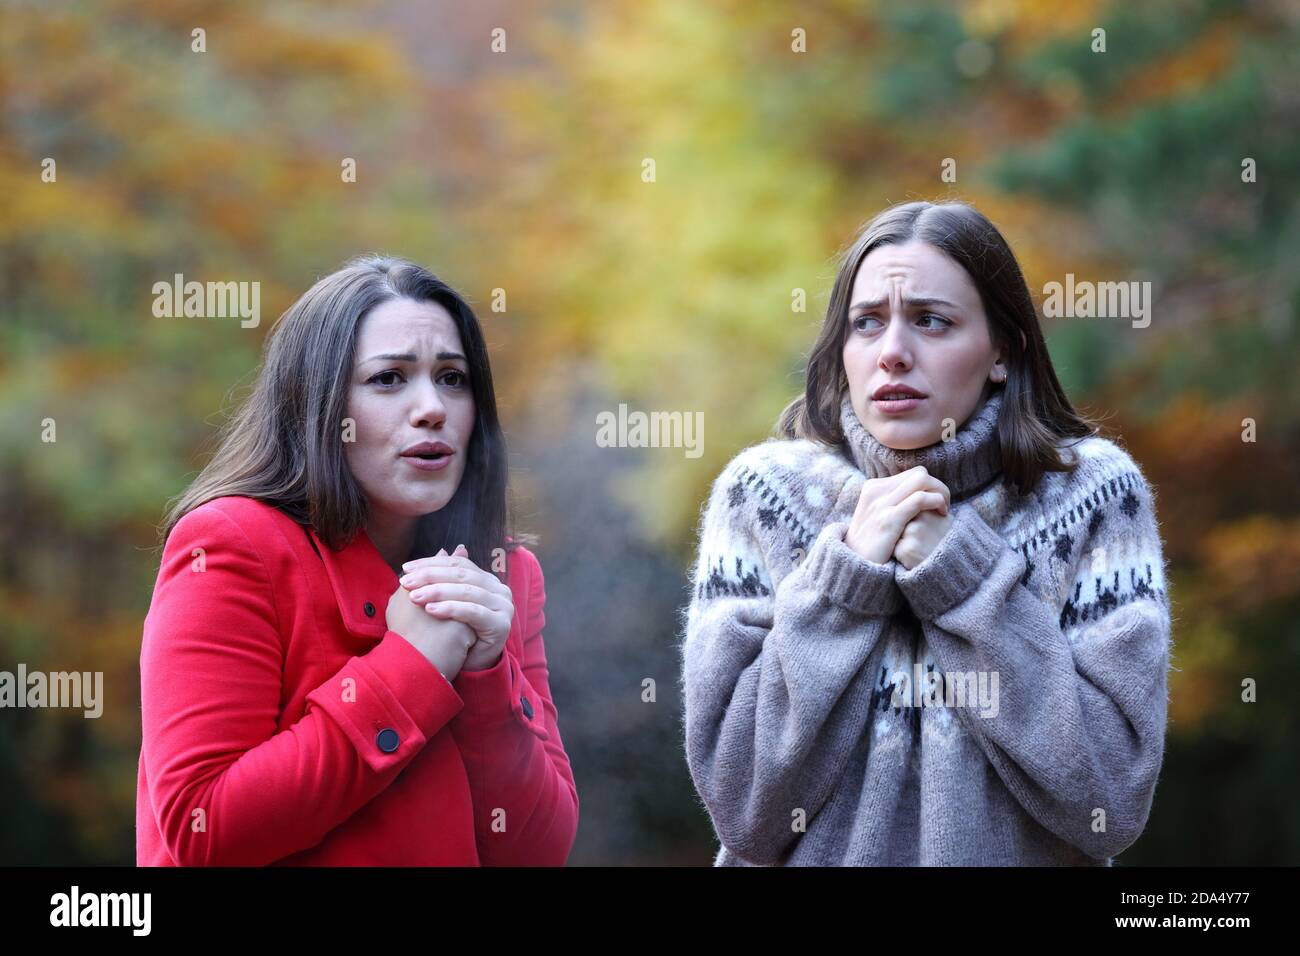 Dos mujeres se quejan de que hacen frío caminando en un parque otoño Foto de stock